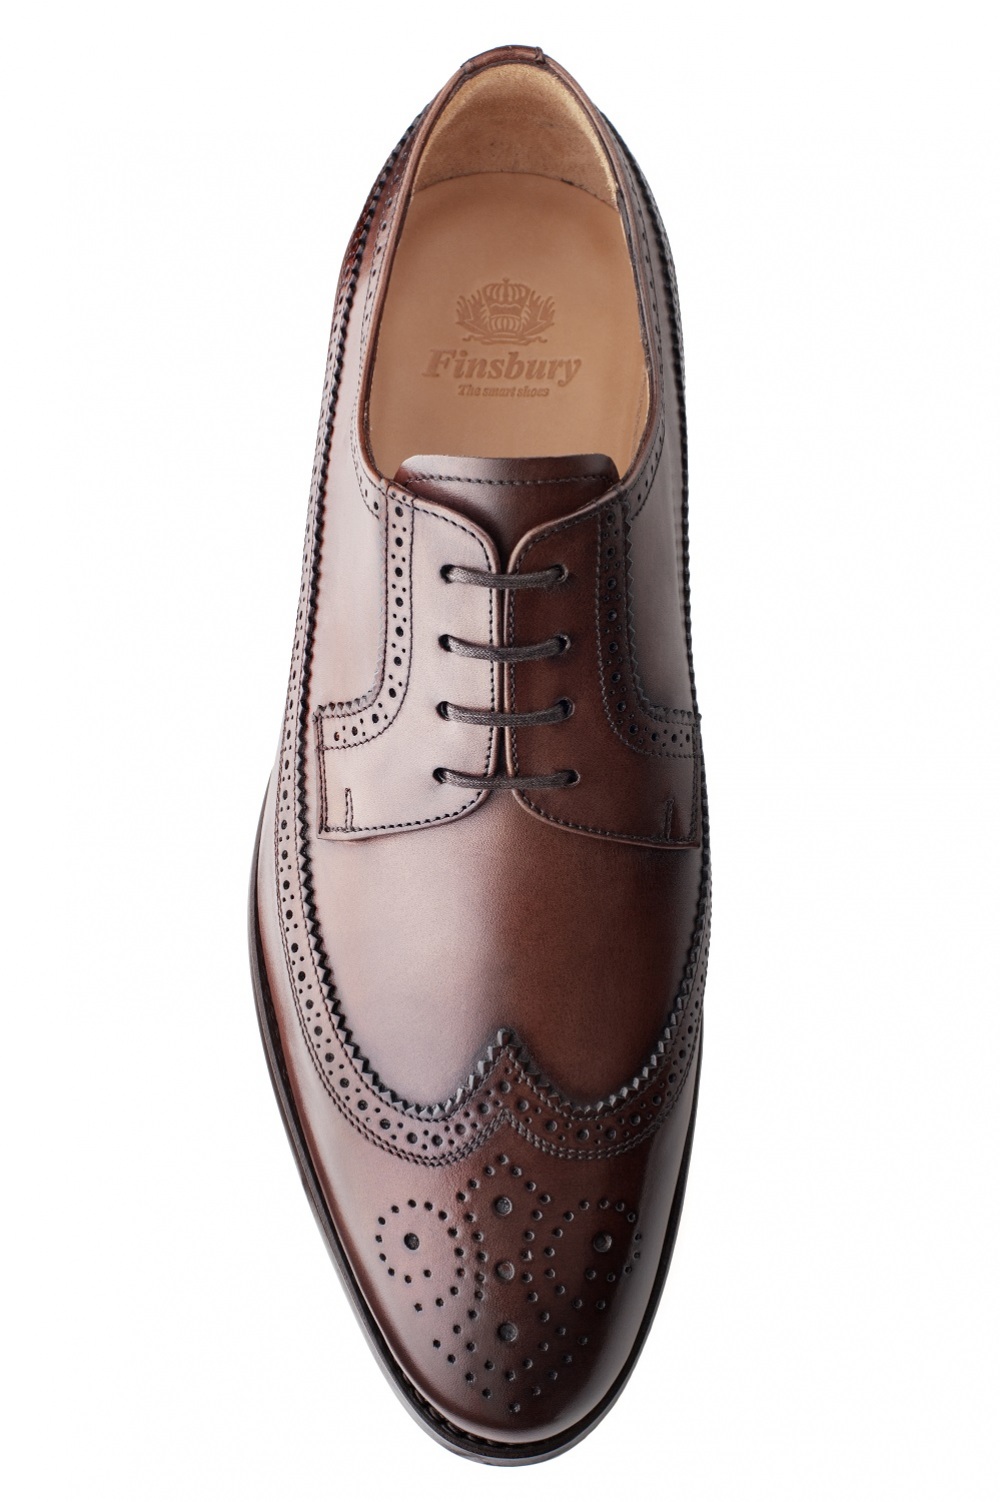 Barton Chestnut Men's Derby Shoe - Finsbury Shoes